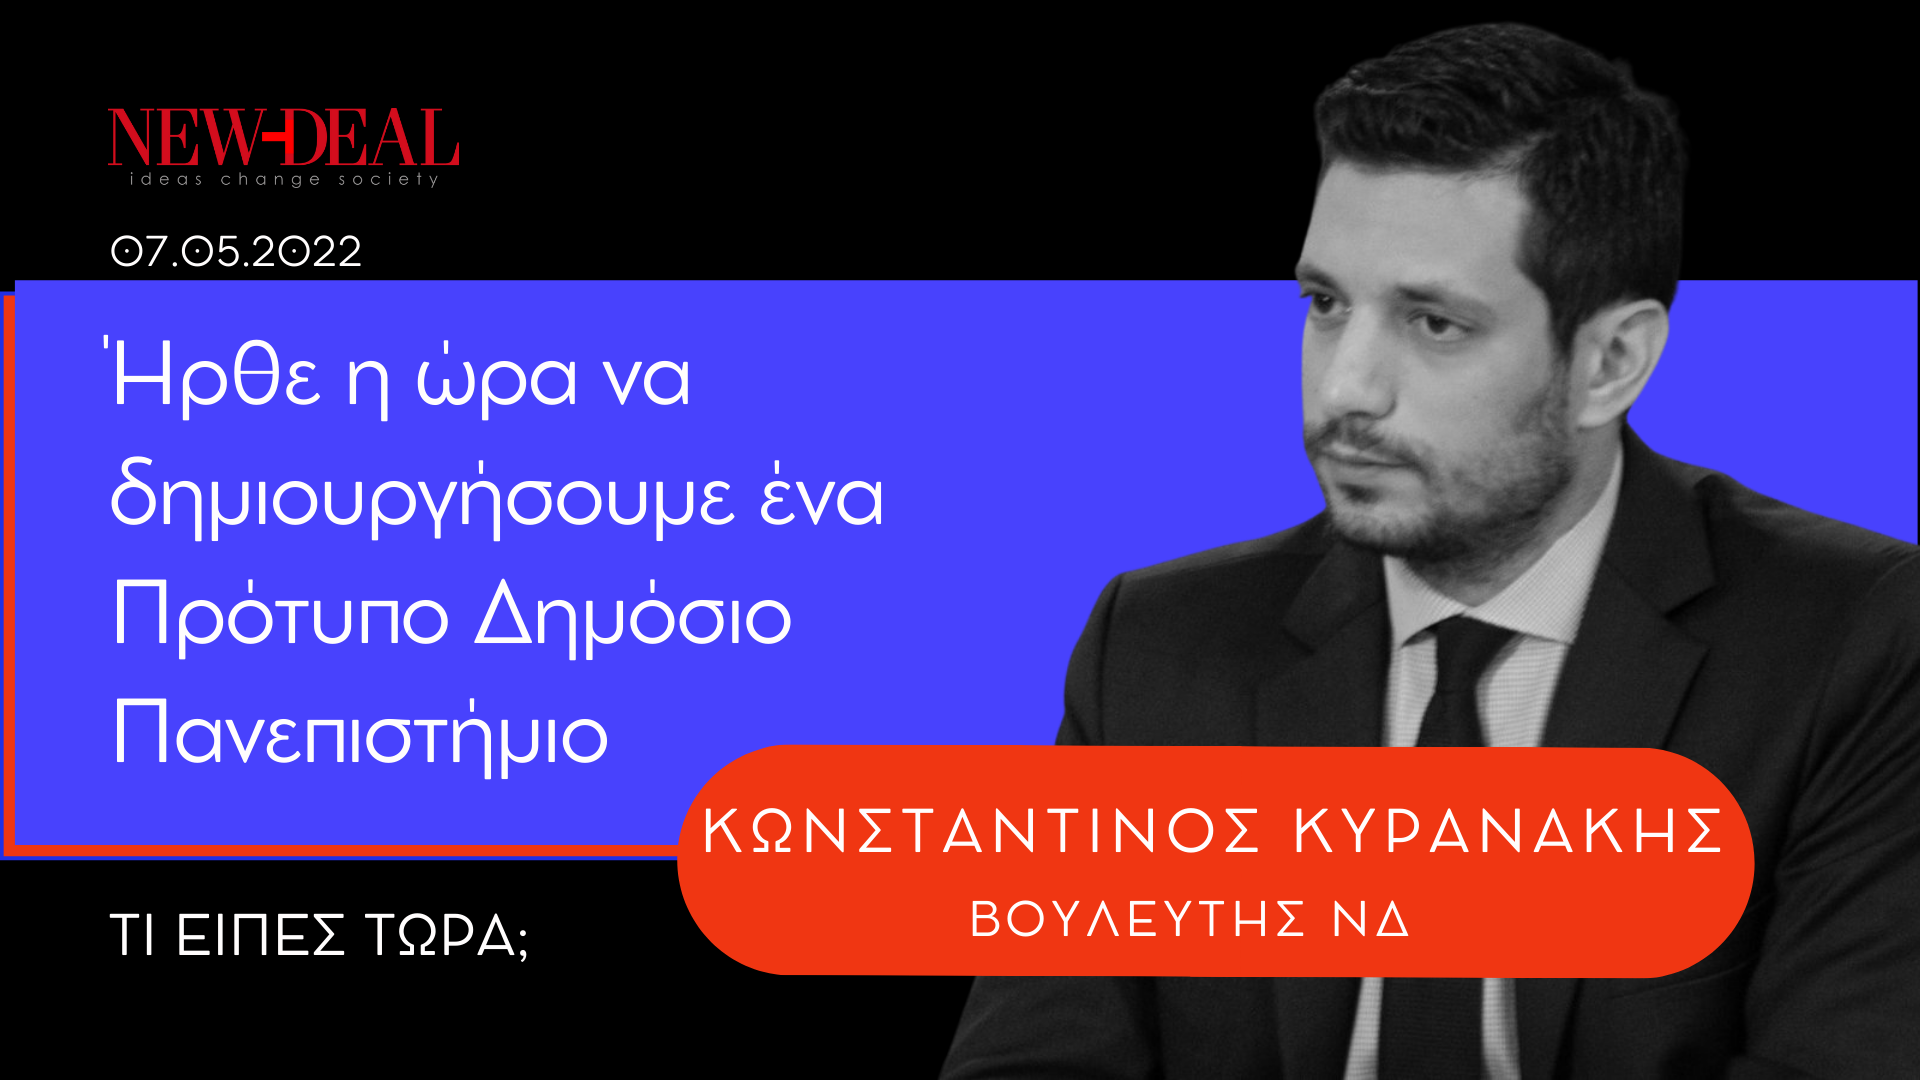 Κωνσταντίνος Κυρανάκης Πρότυπο Δημόσιο Πανεπιστήμιο new deal